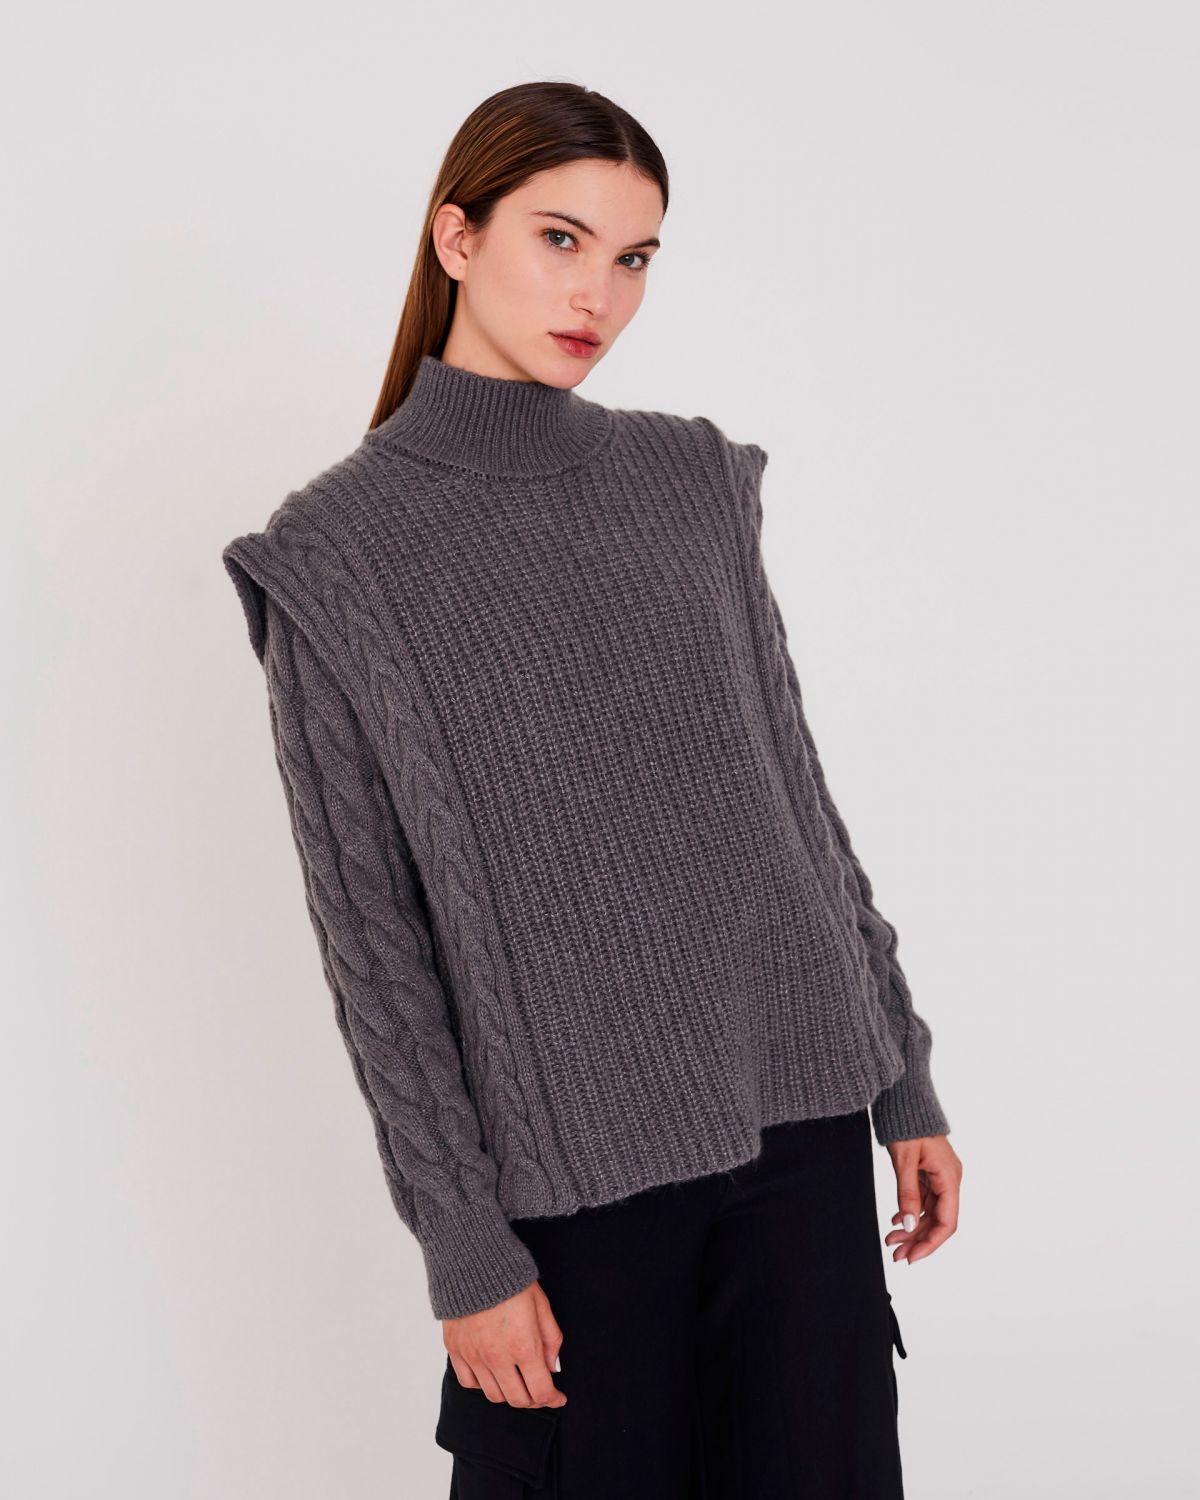 Sweater Malden